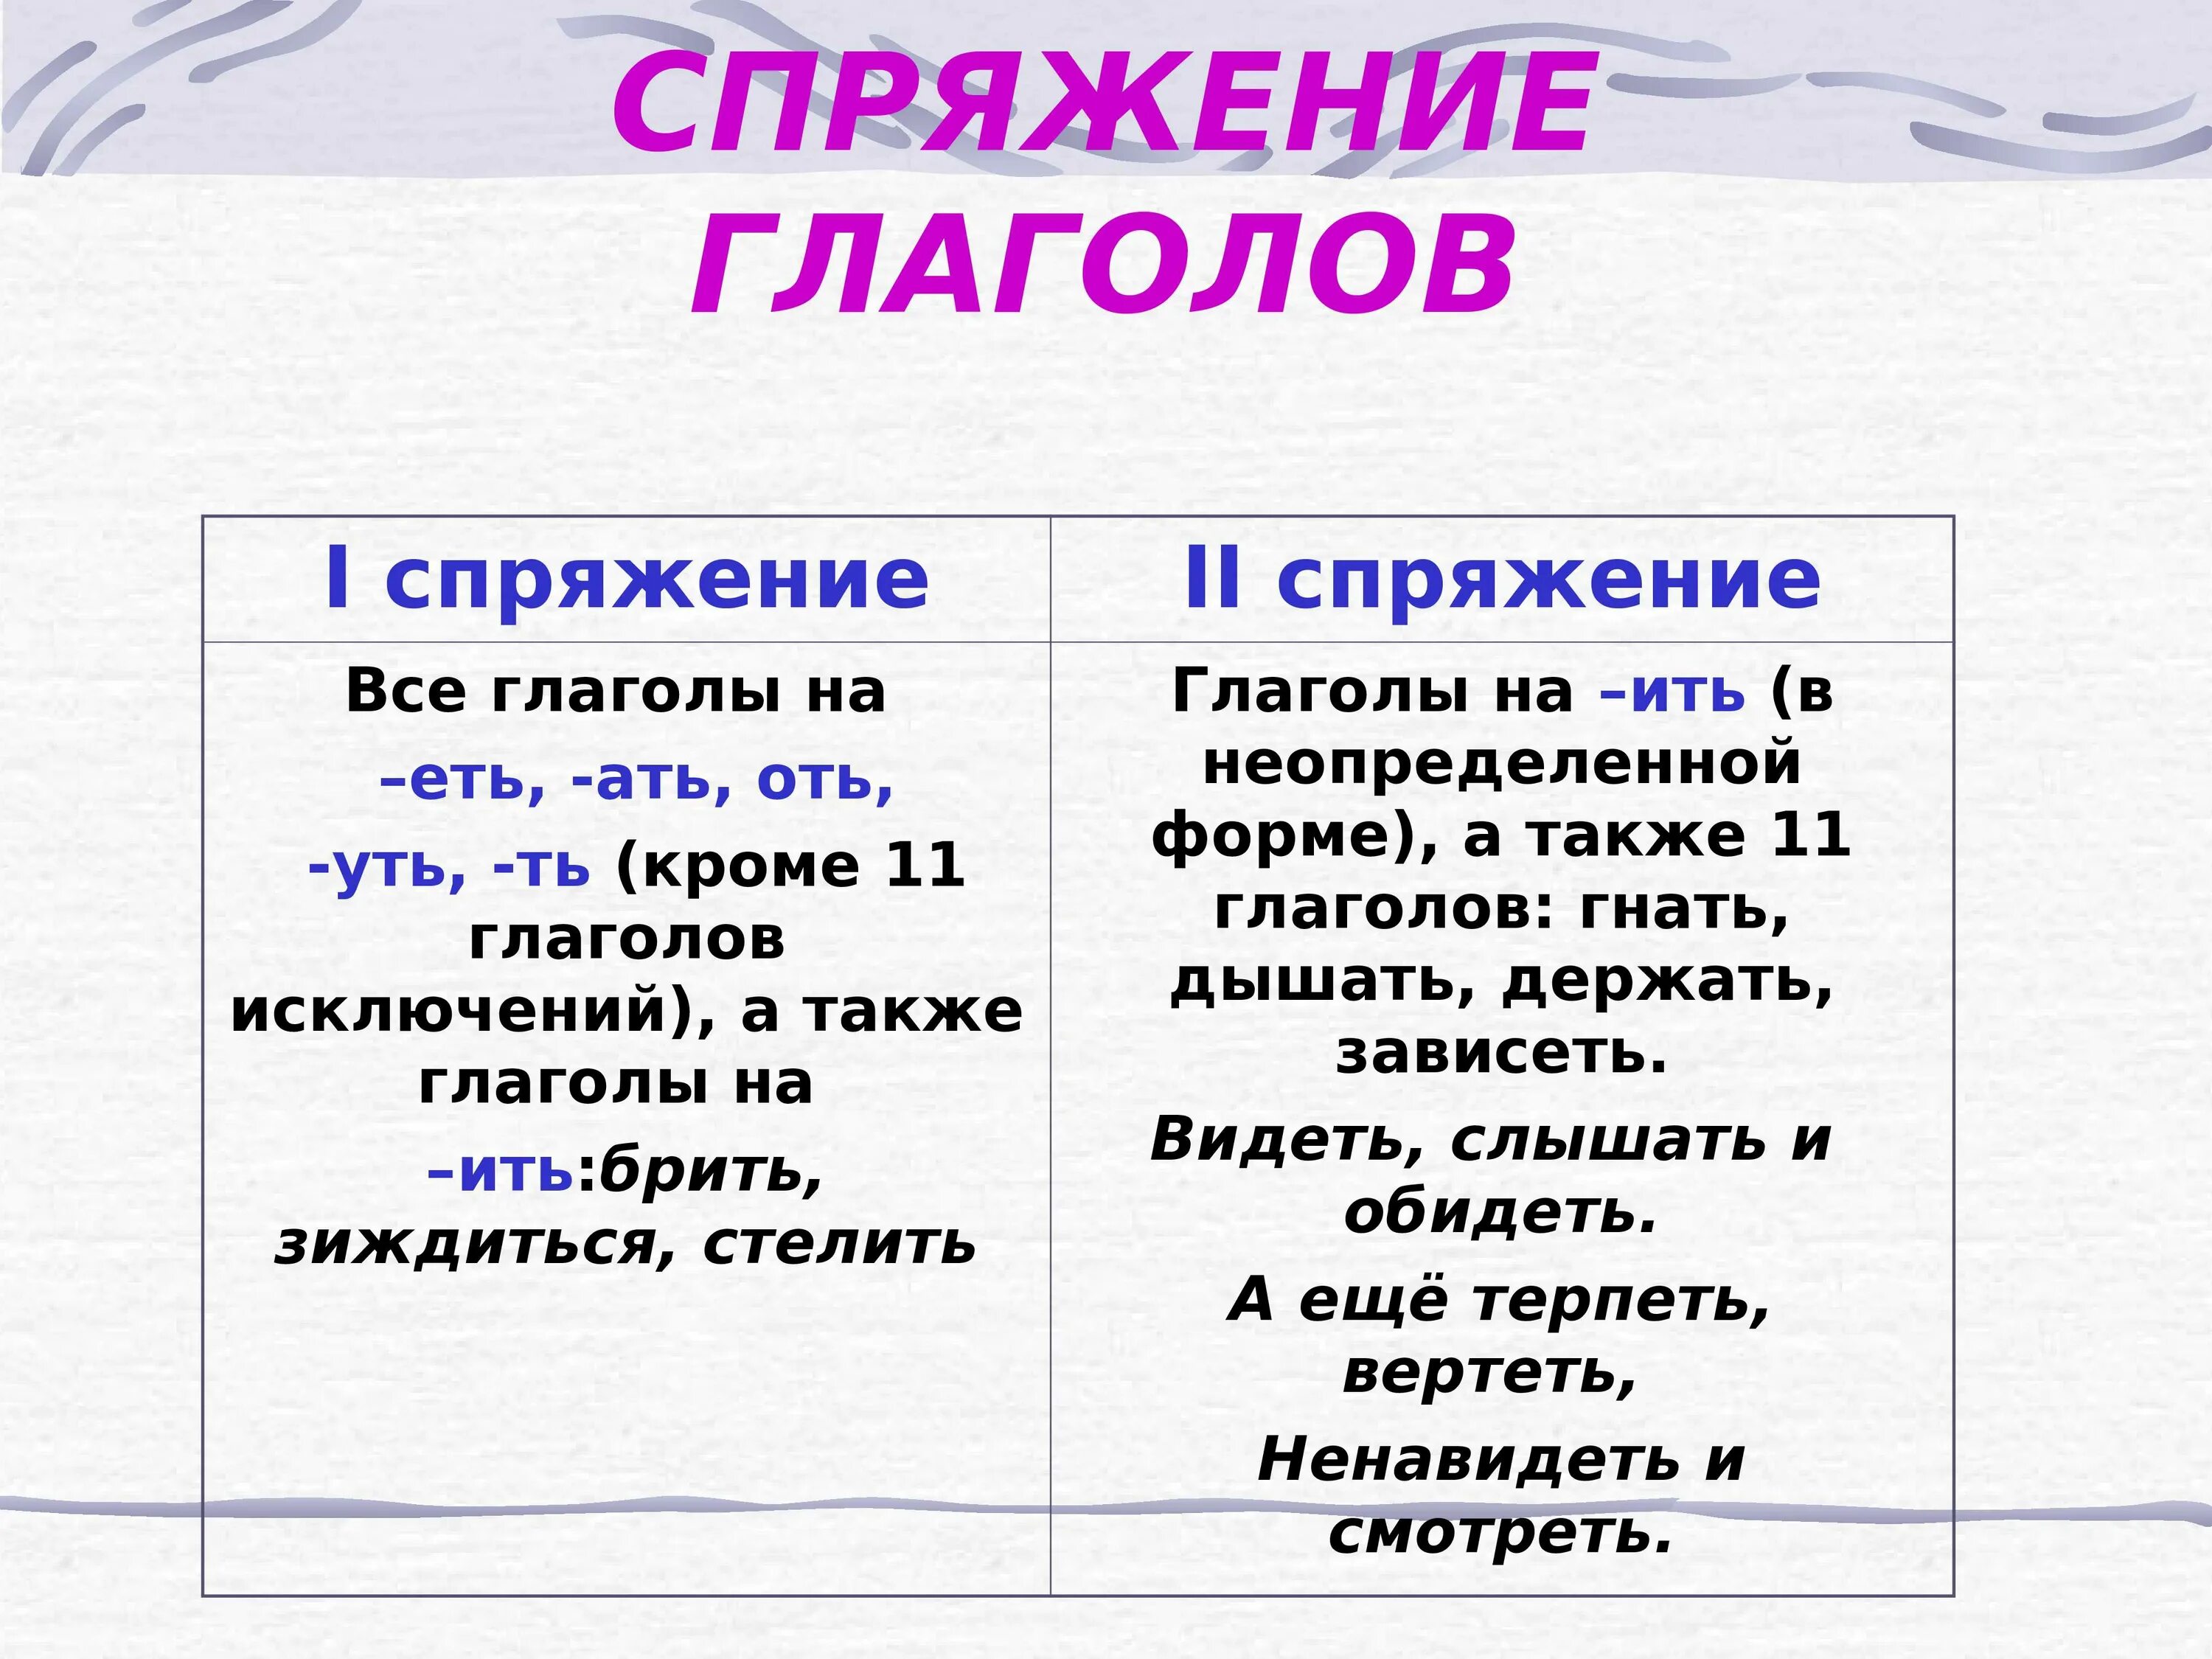 Как понять спряжение глаголов в русском языке 4 класс таблица. Как определить спряжение глагола 6 класс. Как понять спряжение глаголов 6 класс. Как понять спряжение глаголов в русском языке 4 класс.